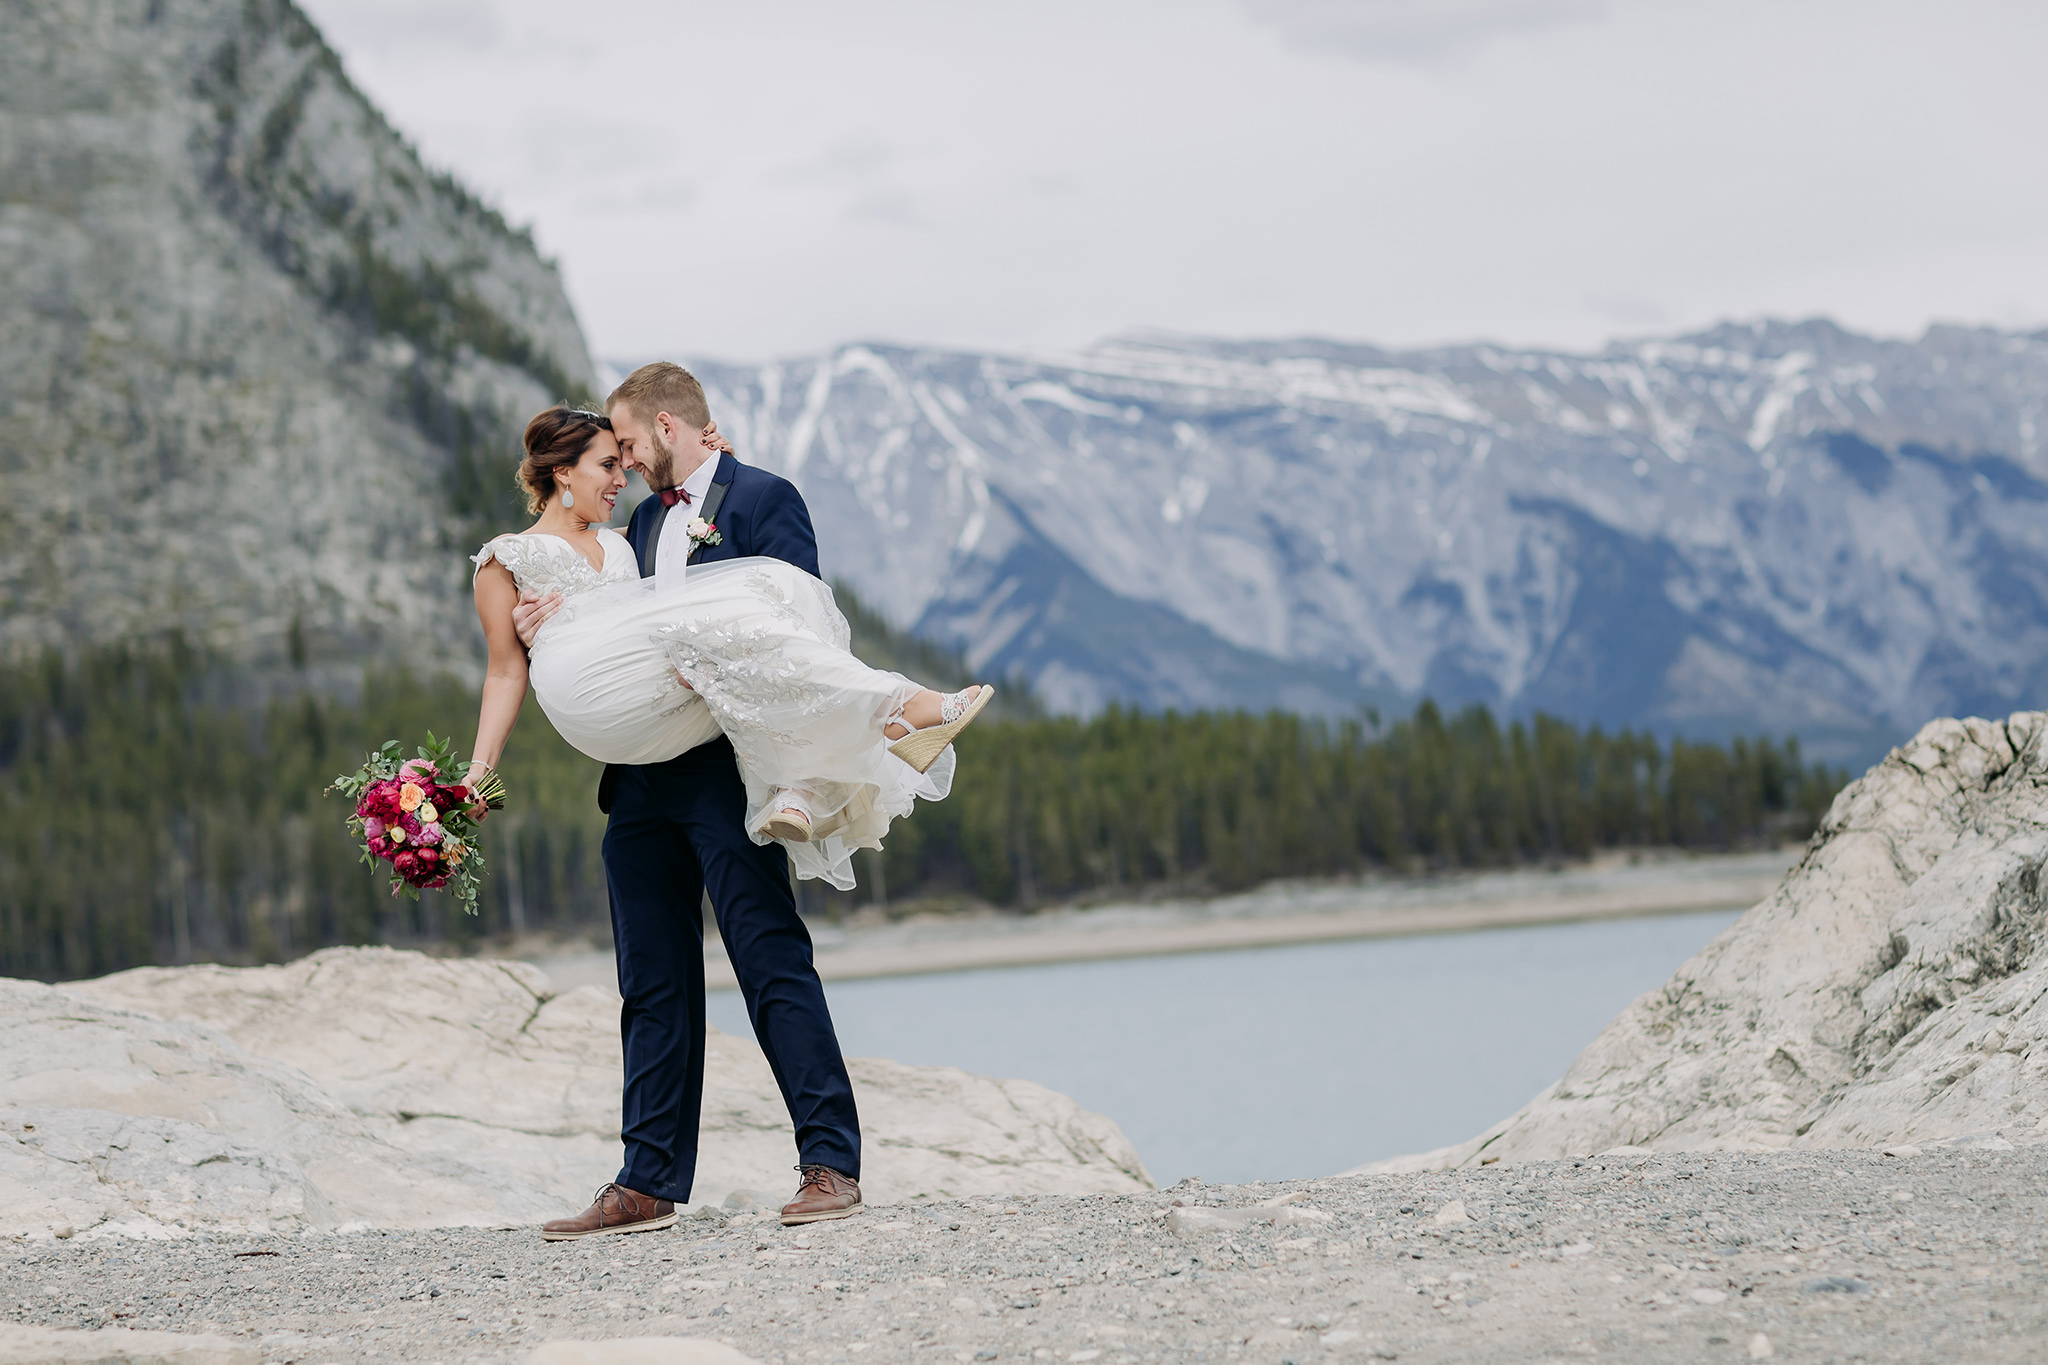 Lake Minnewanka mountain wedding photos in spring with blue mountain lake & gorgeous views